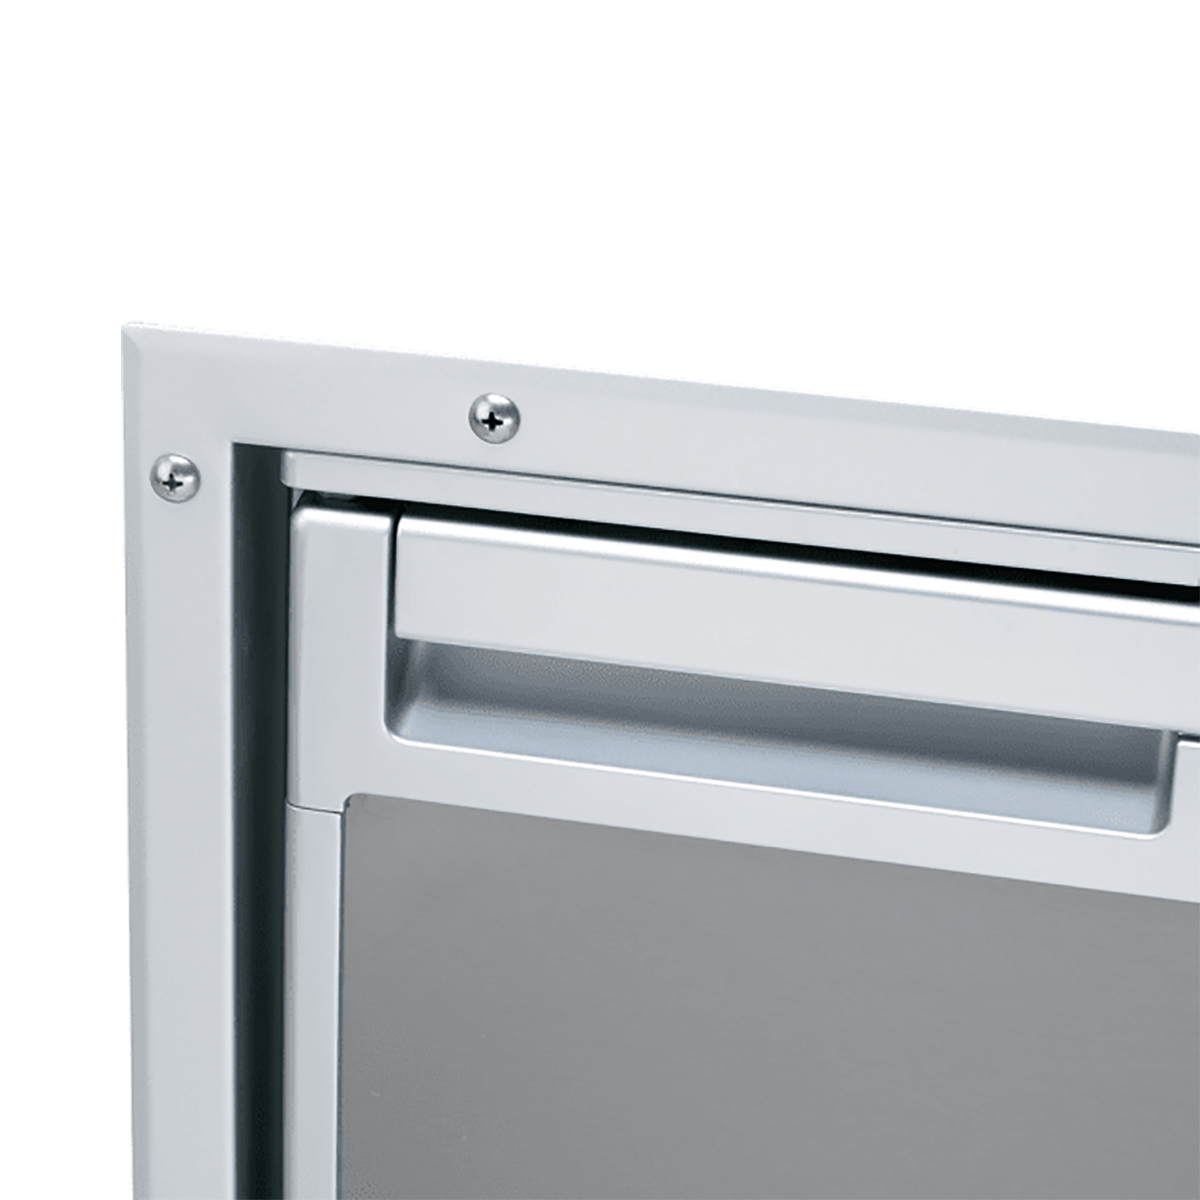 Монтажная рама с утапливаемым креплением Dometic CoolMatic CR-IFFM-110-N 9105306413 для холодильников CRX 110